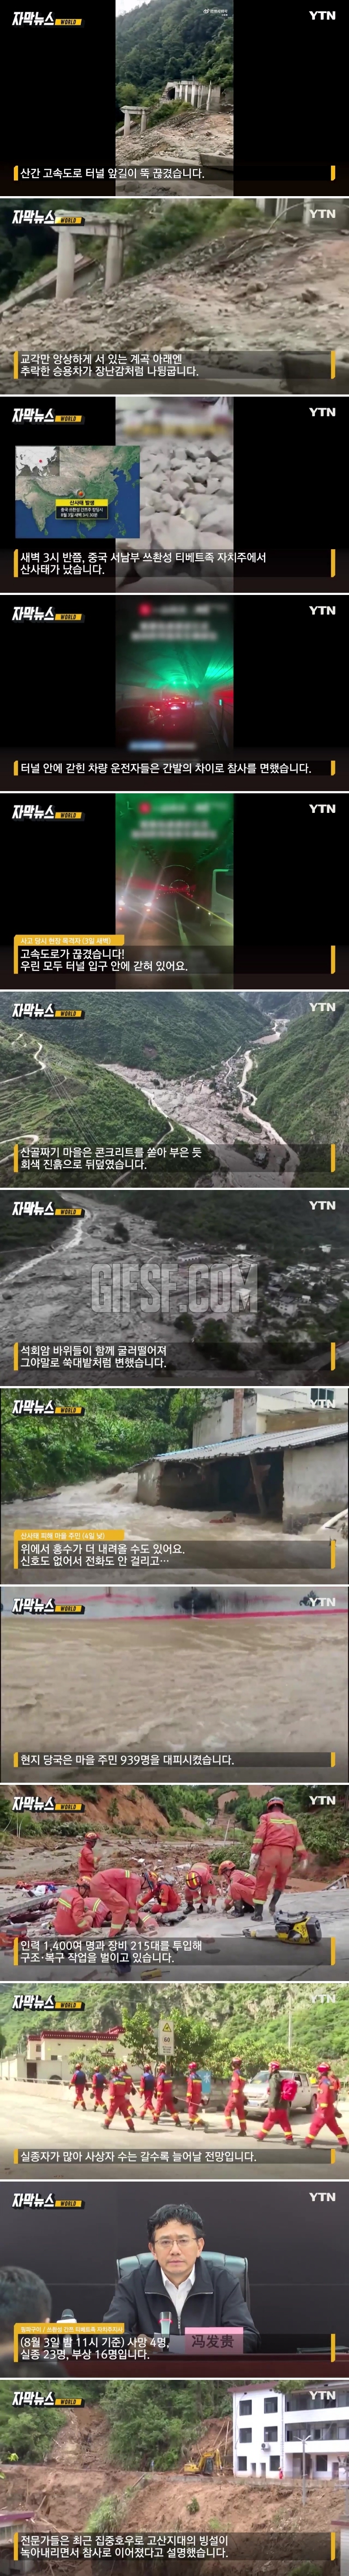 회색 진흙으로 뒤덮인 마을.中 산사태 27명 사망·실종.news_1.jpg